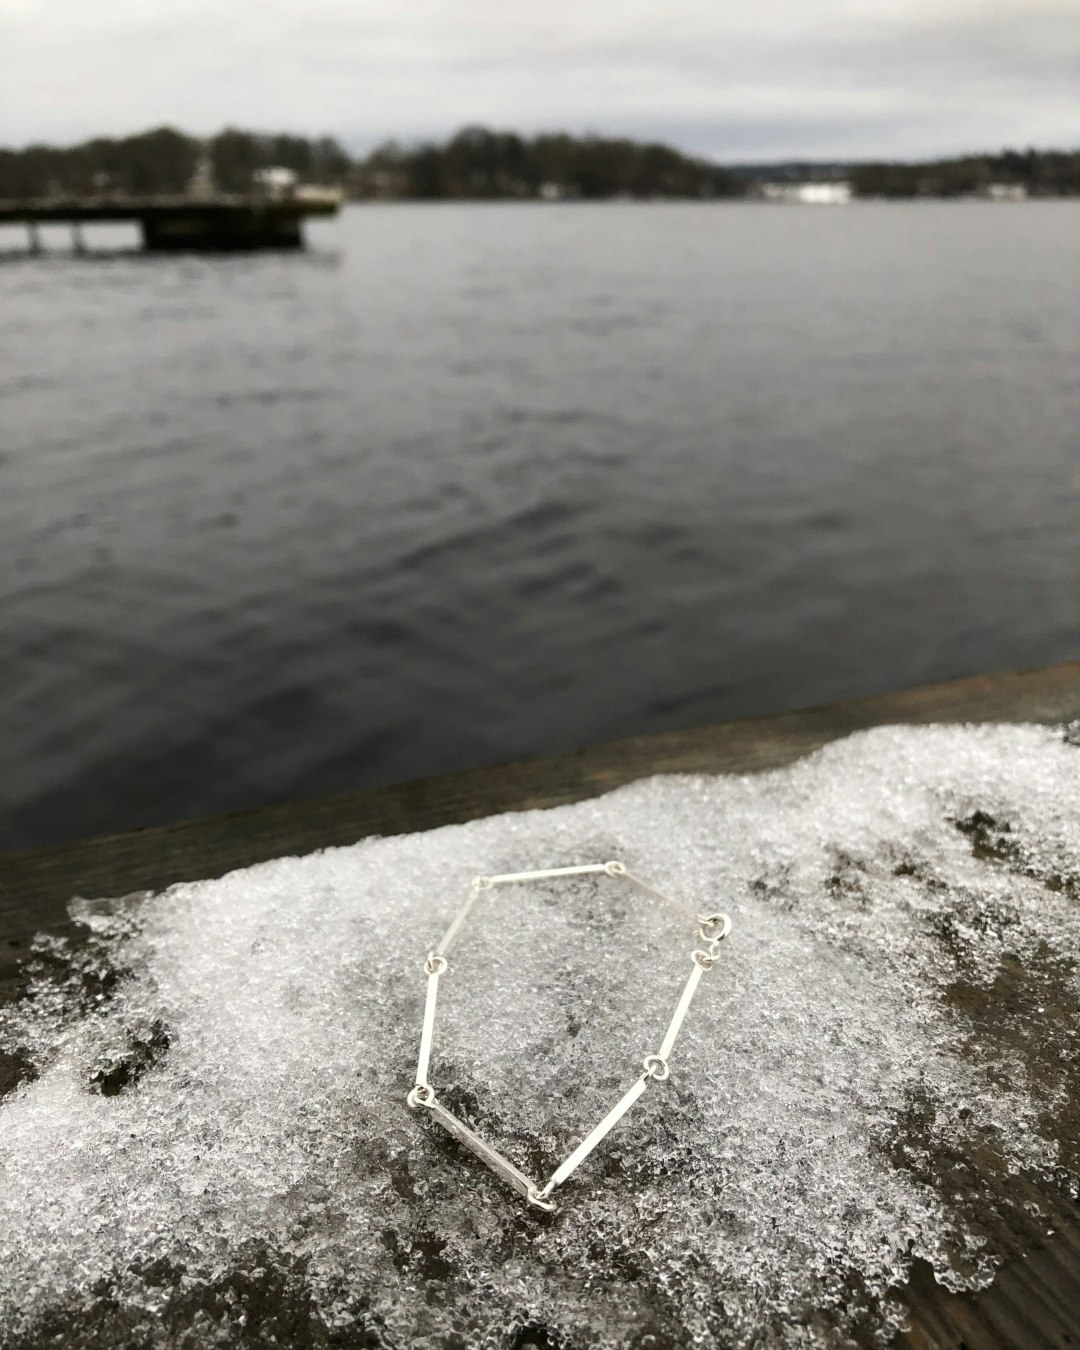 Unikt armband tillverkat av fyrkantig silvertråd och små öglor. Vid hav med is.